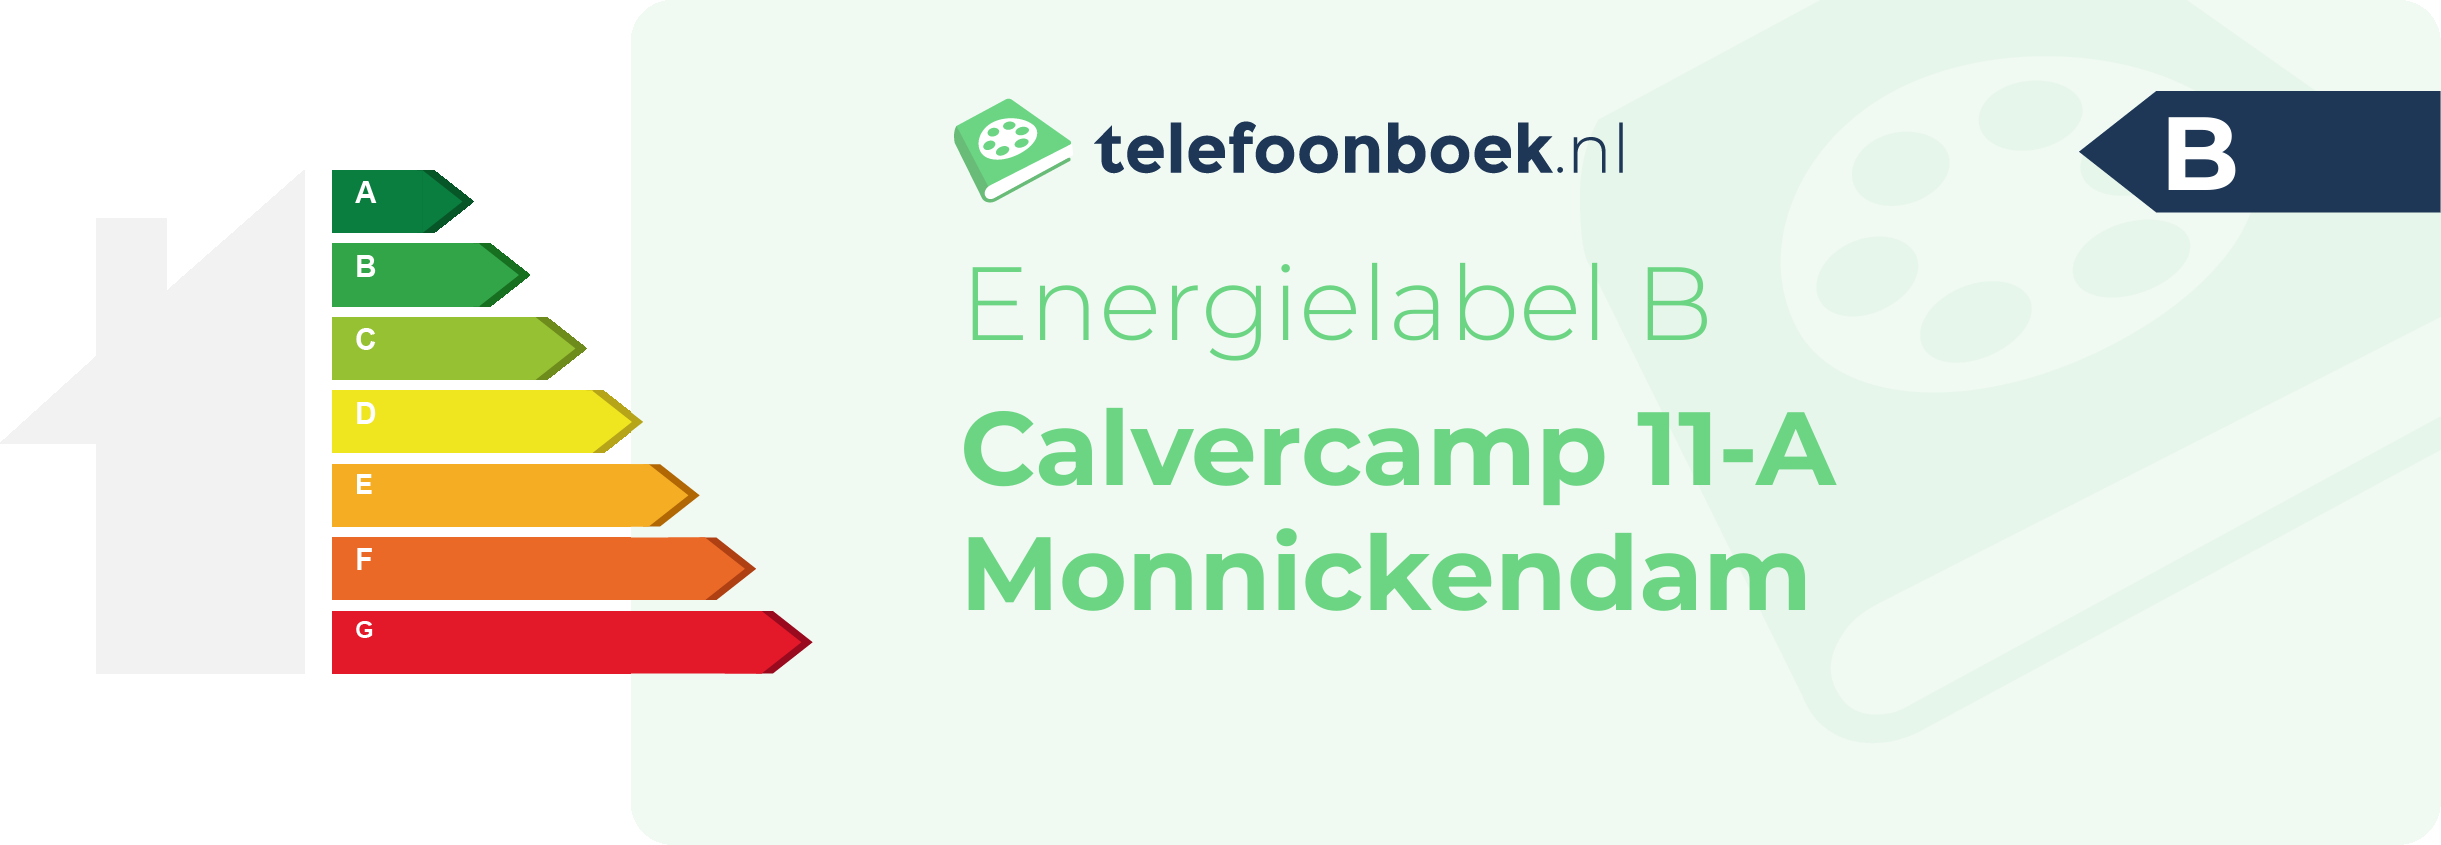 Energielabel Calvercamp 11-A Monnickendam